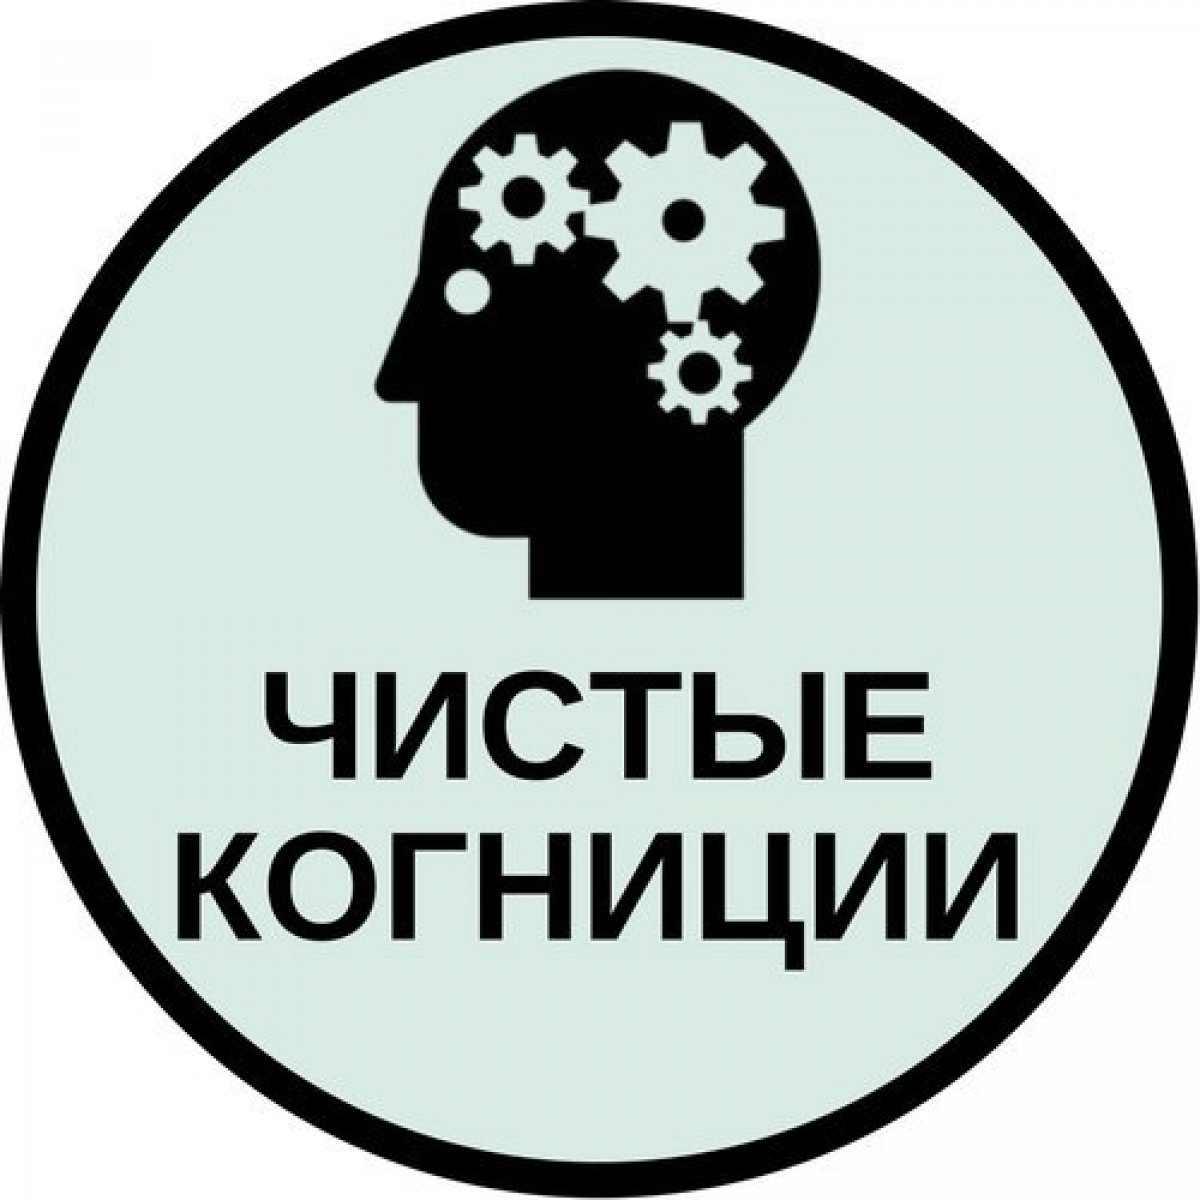 14 июня проект "Чистые когниции" на базе института психологии РГПУ им. А. И. Герцена приглашает на очередную встречу.